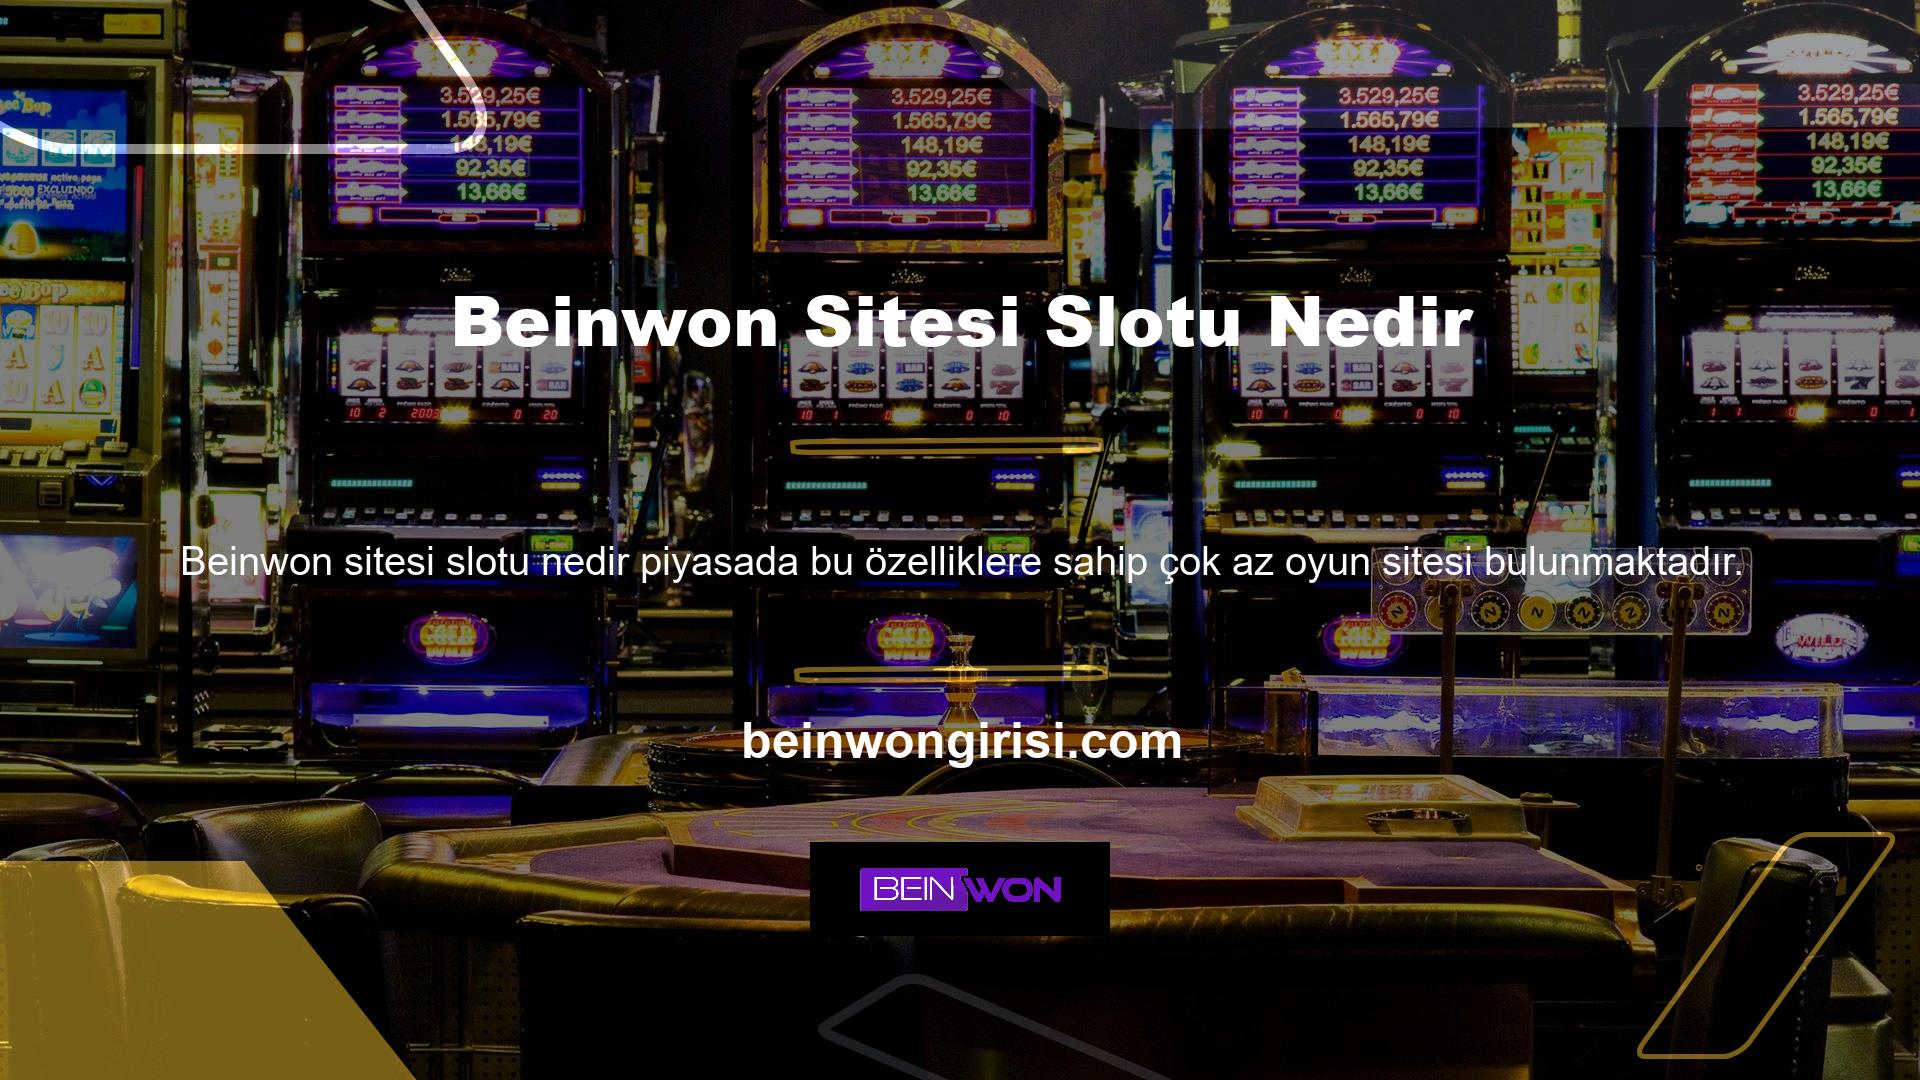 Saygın bir casino sitesinde yatırımınızı bonusa çevirin ve anında çekebilirsiniz